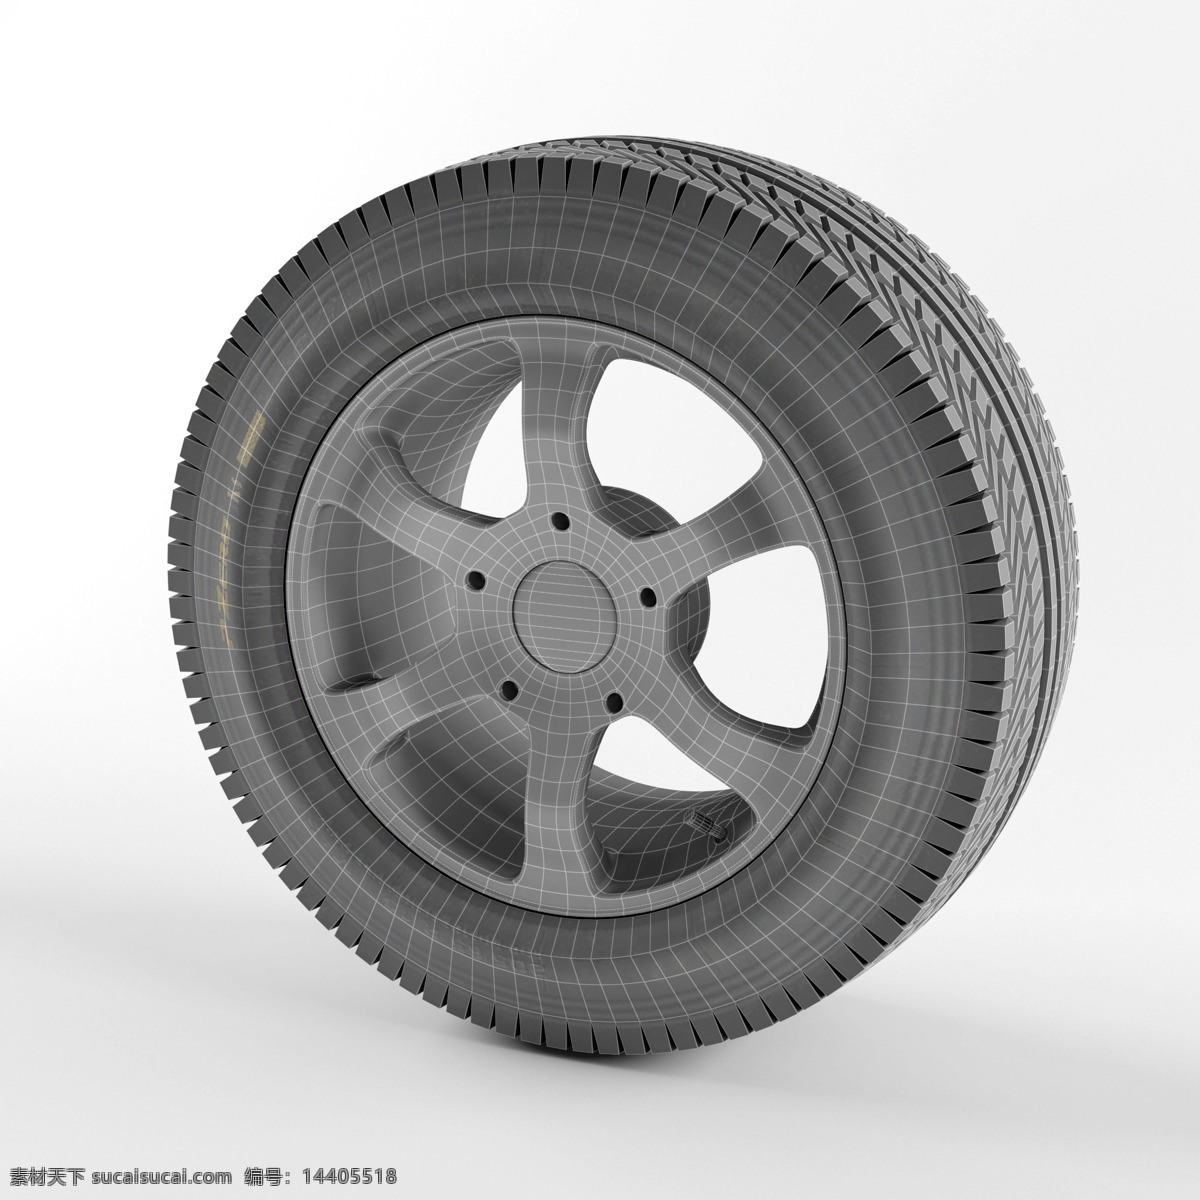 3d 车轮 模型 模型素材 3d渲染 3d模型 效果图 车轮模型